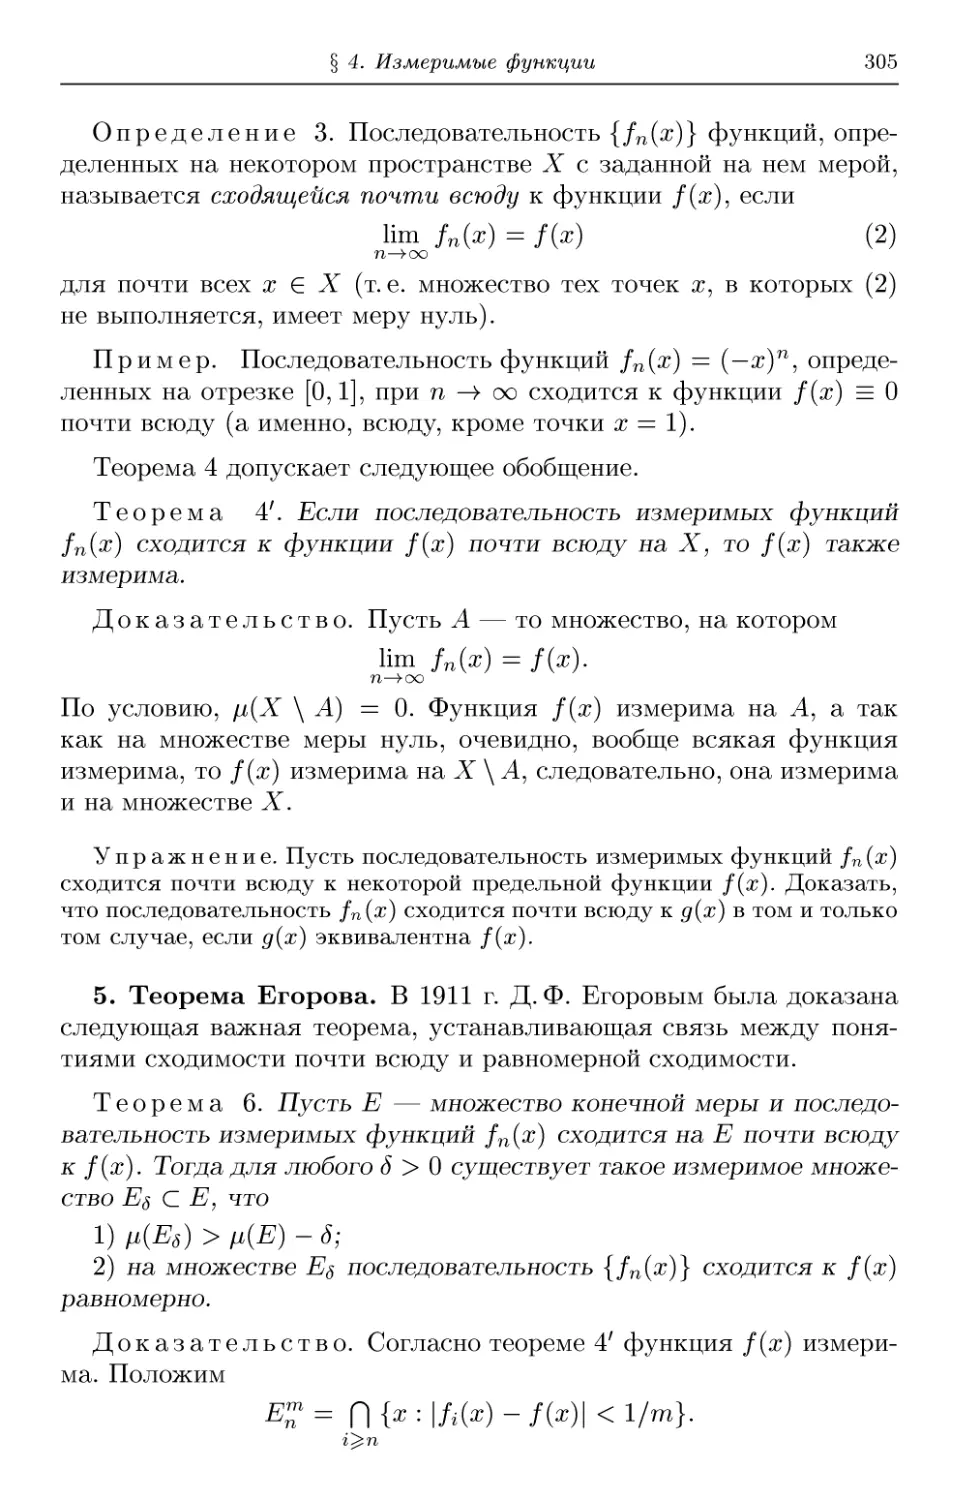 5. Теорема Егорова